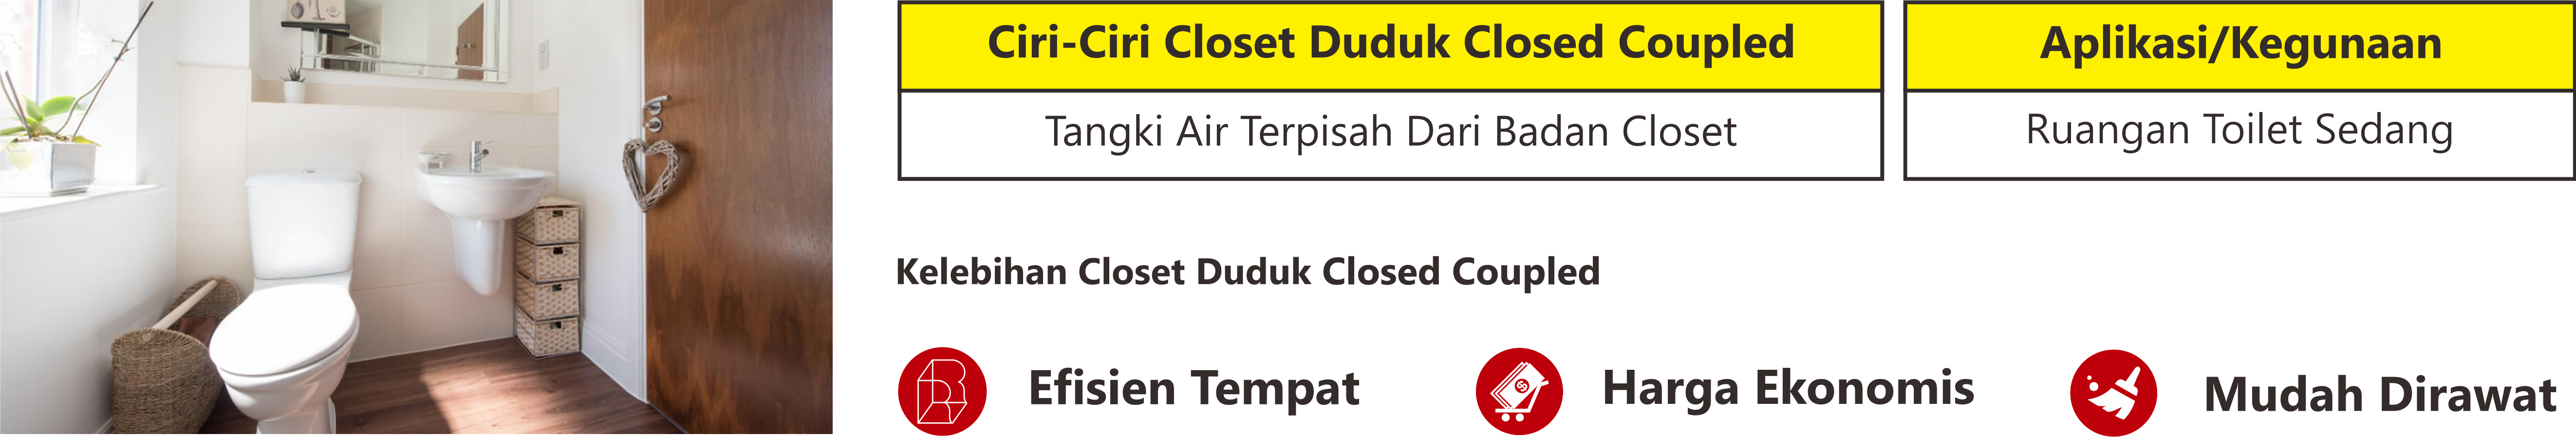 closet duduk closed coupled